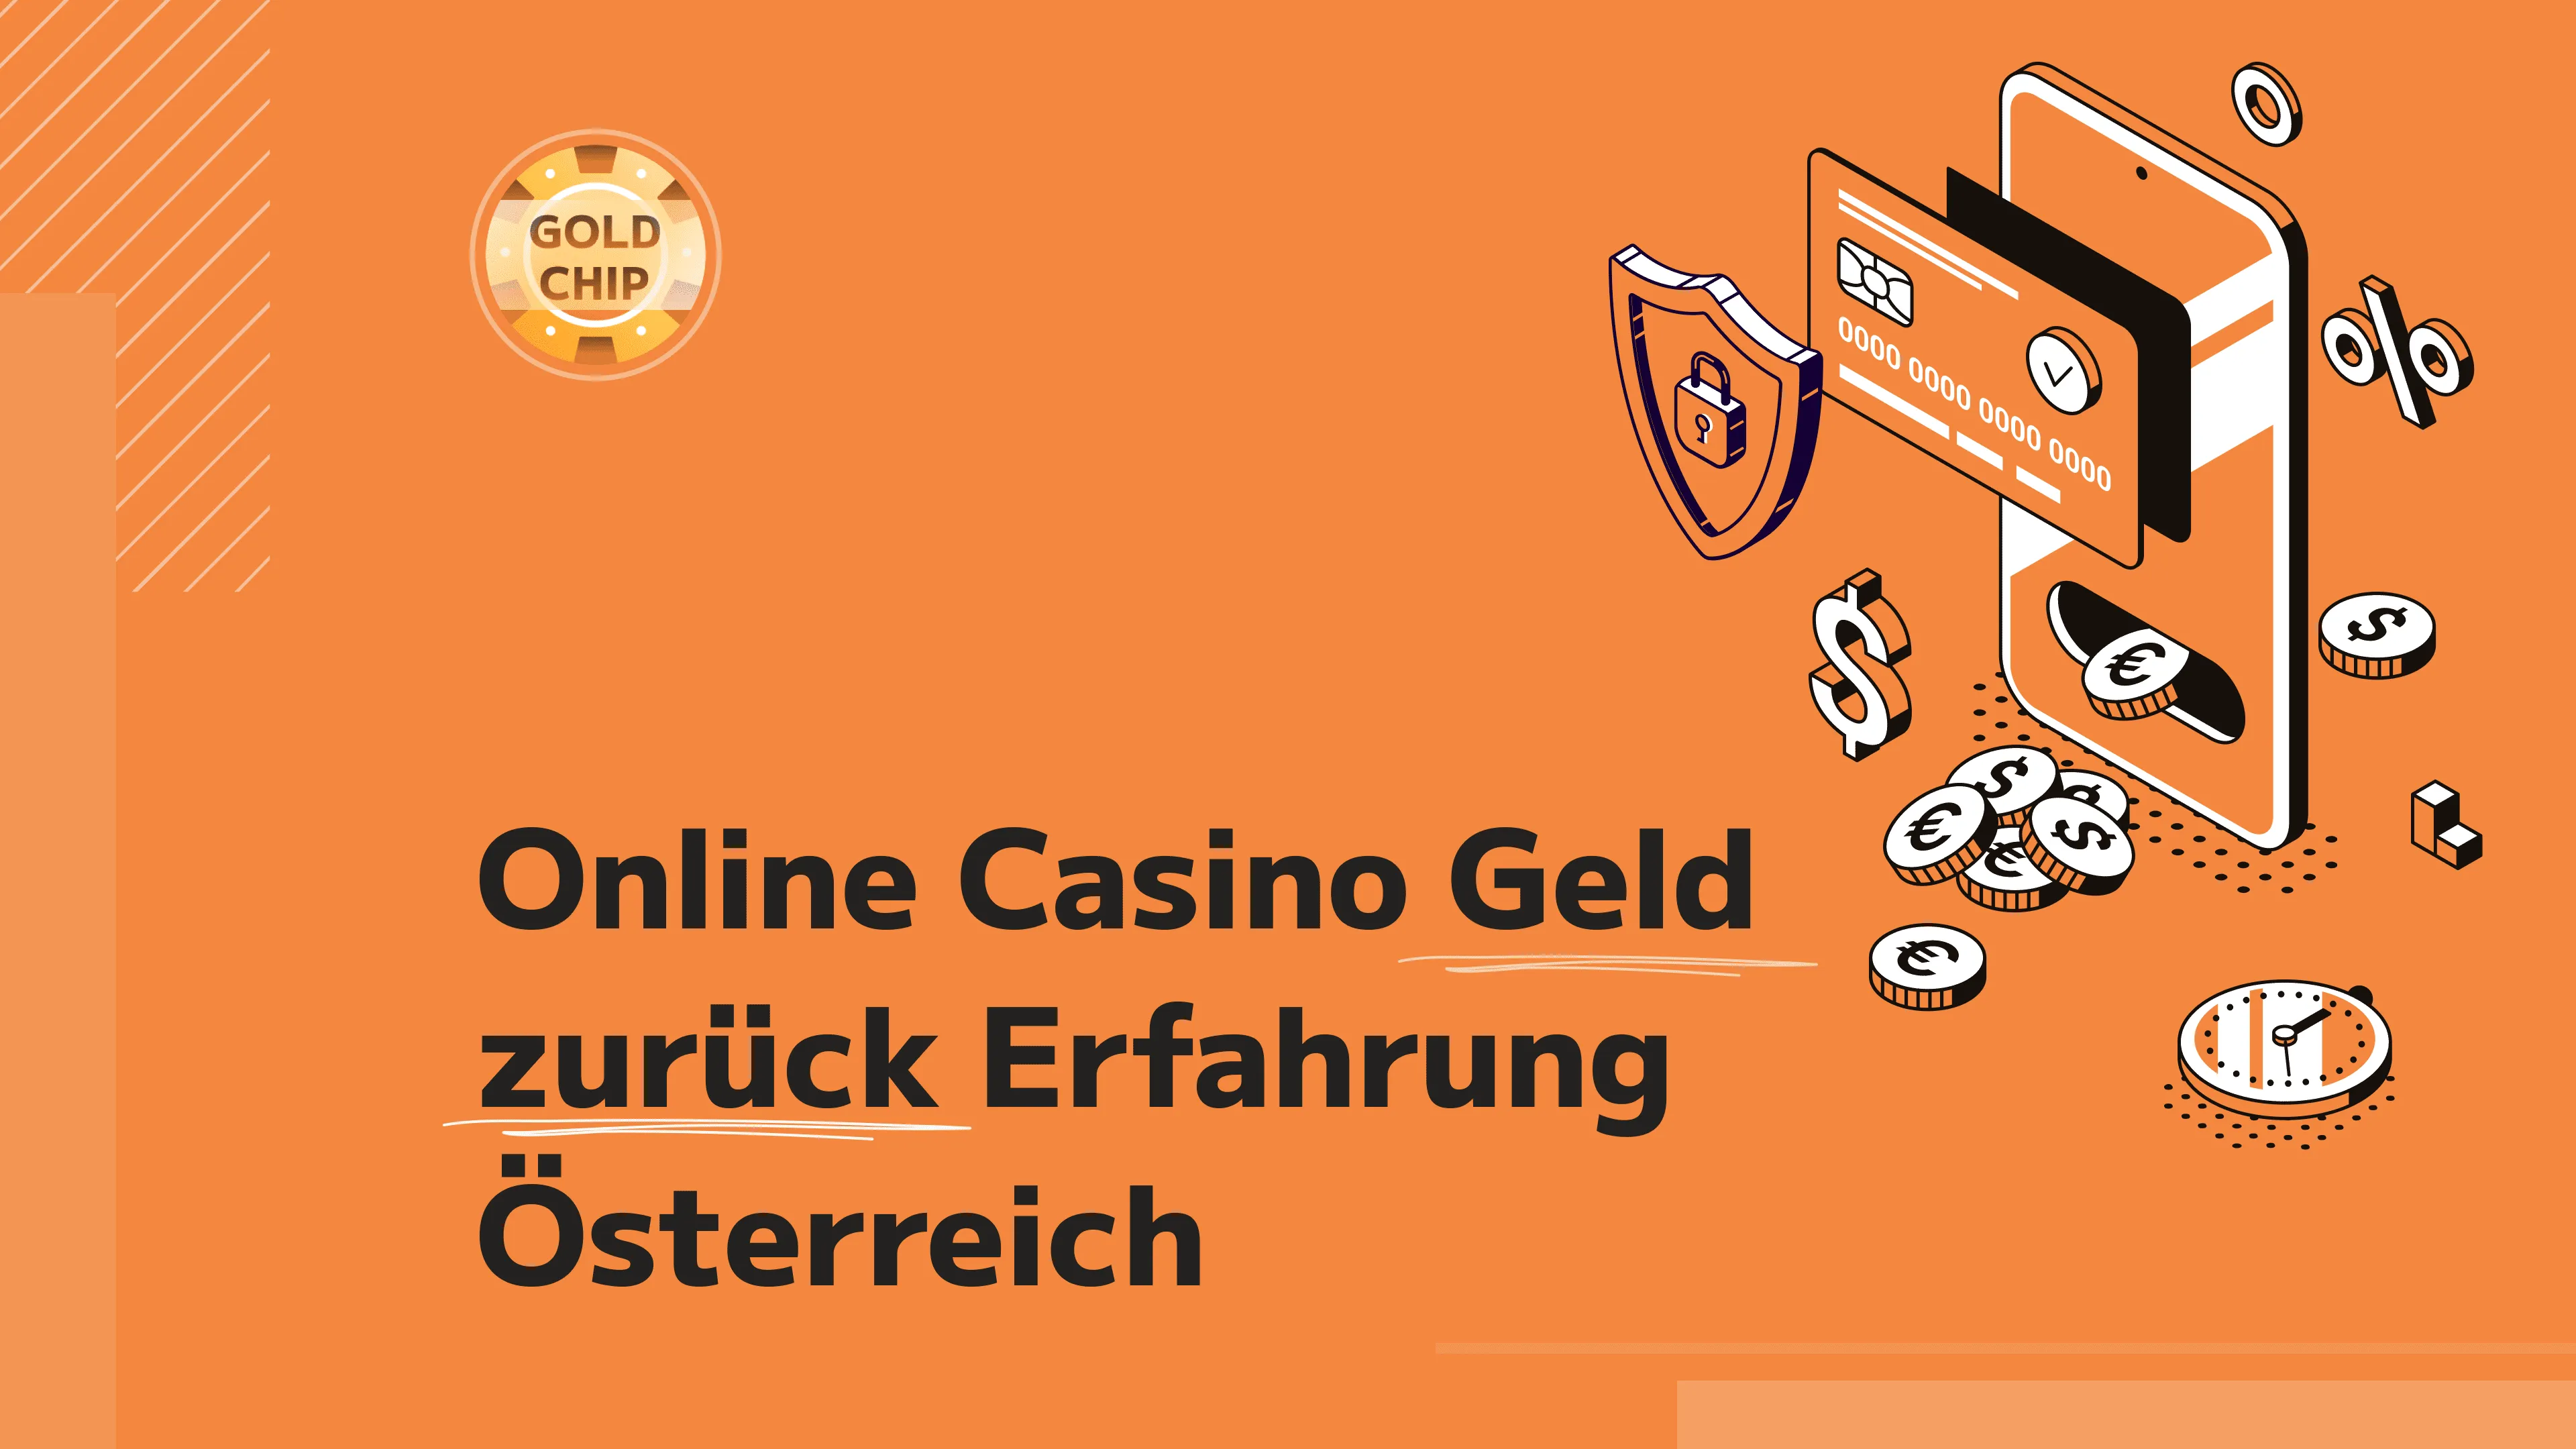 Online Casino Österreich Daten, von denen wir alle lernen können